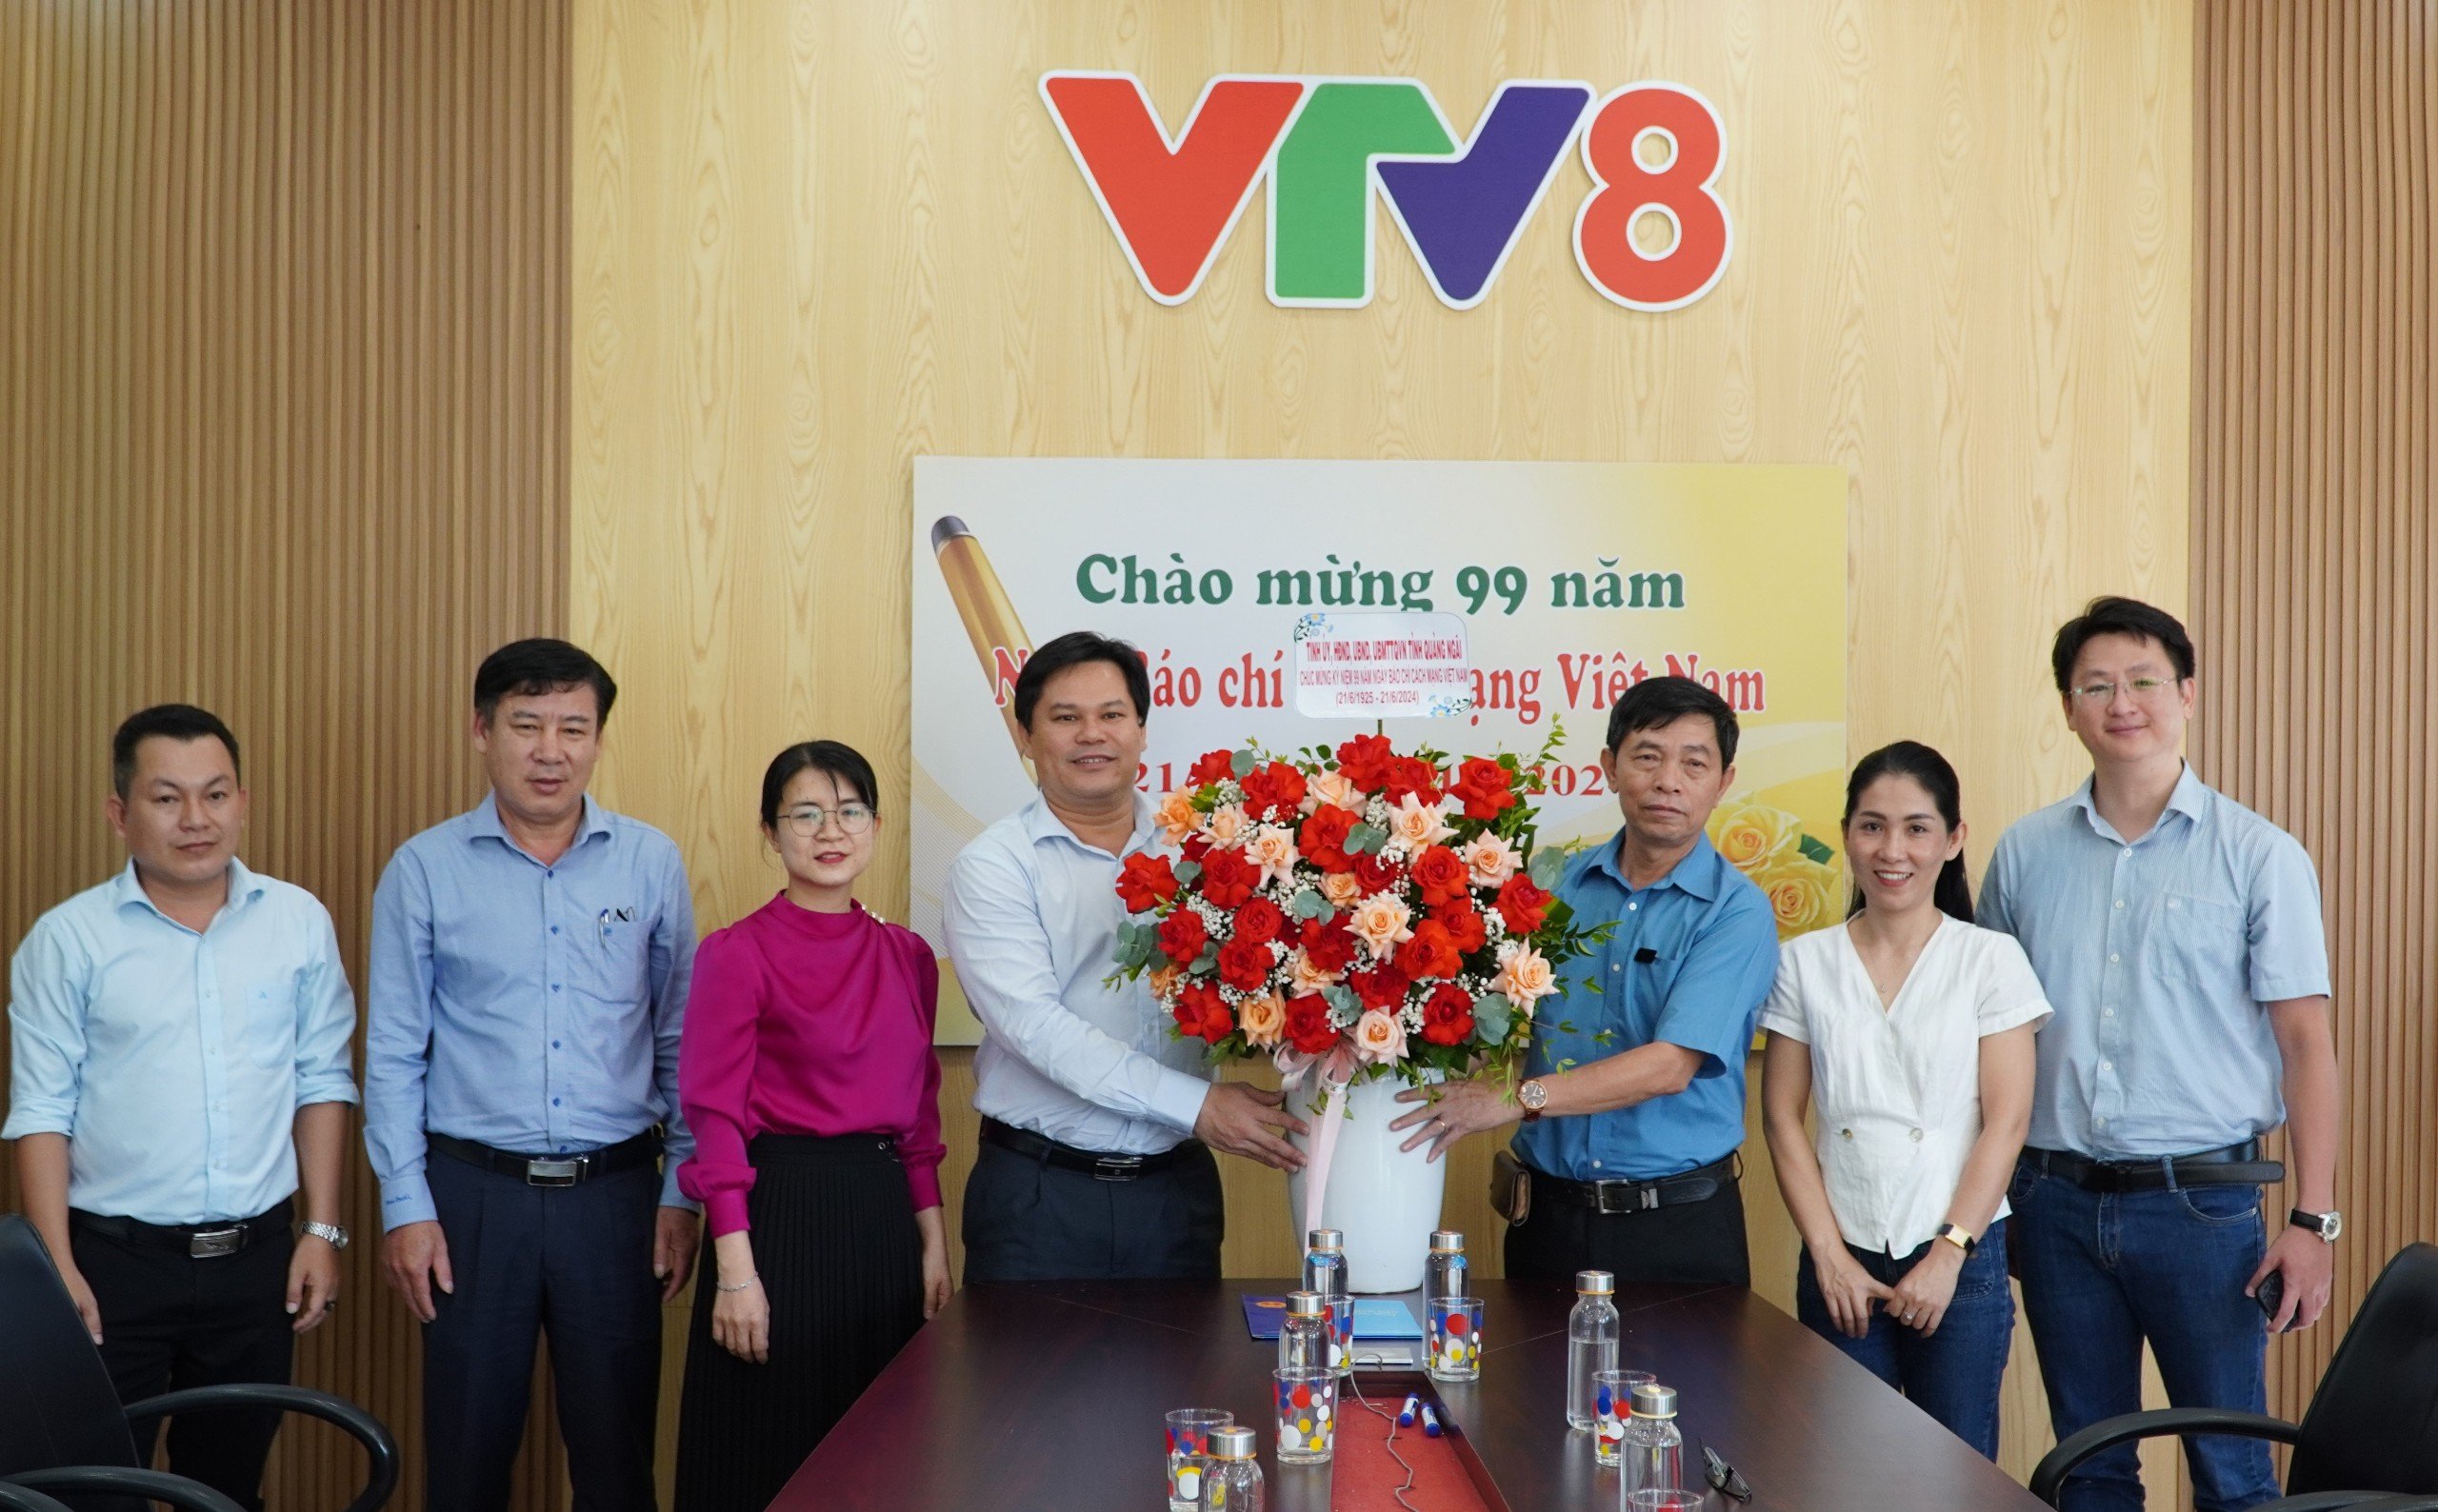 Phó Chủ tịch UBND tỉnh Trần Phước Hiền thăm, chúc mừng Trung tâm Truyền hình Việt Nam, khu vực miền Trung – Tây Nguyên VTV8